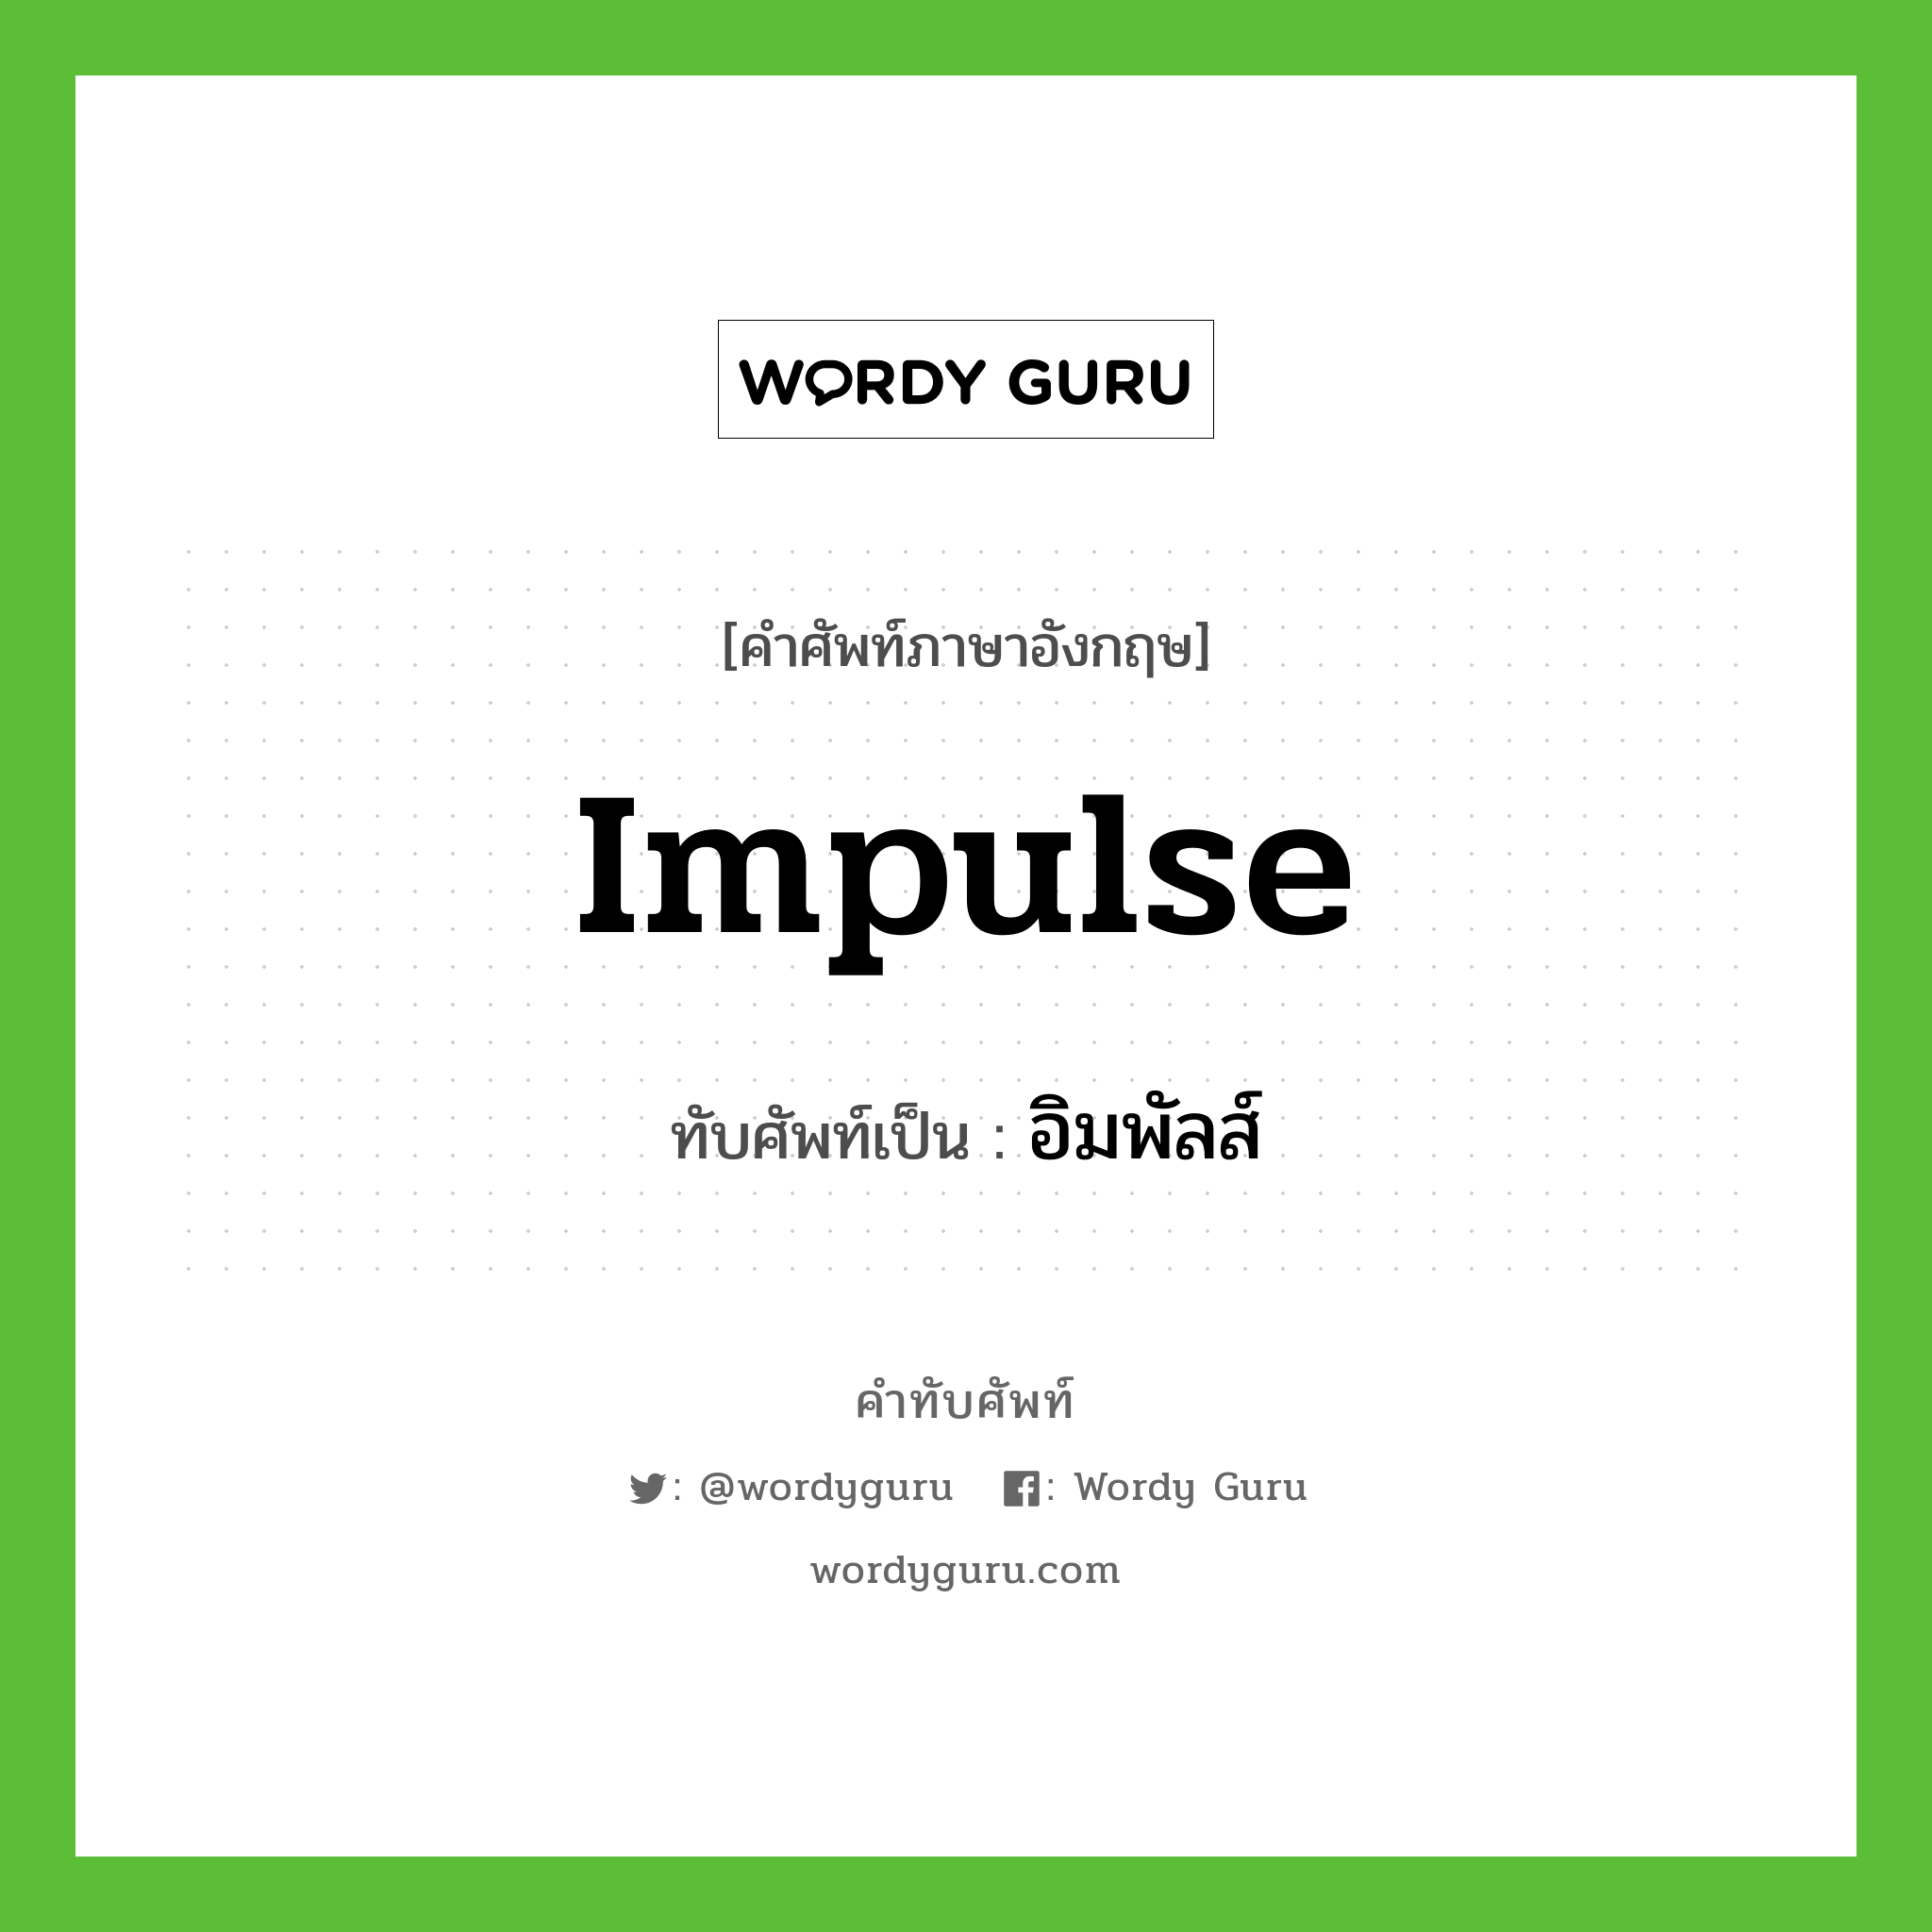 impulse เขียนเป็นคำไทยว่าอะไร?, คำศัพท์ภาษาอังกฤษ impulse ทับศัพท์เป็น อิมพัลส์